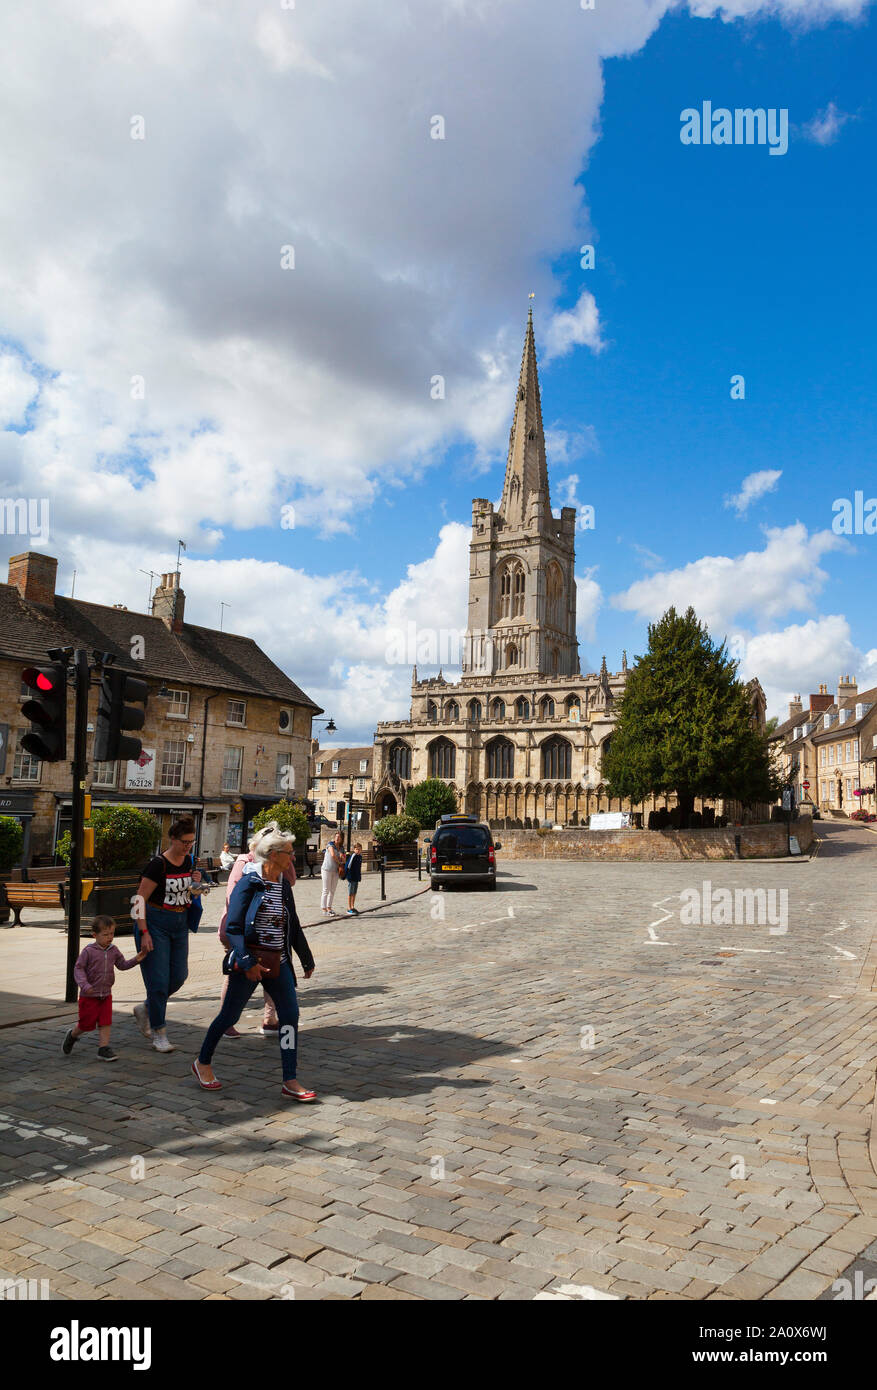 Église de Tous les Saints, Red Lion Square, ciel bleu ensoleillé, Stamford. Lincs, Royaume-Uni Banque D'Images